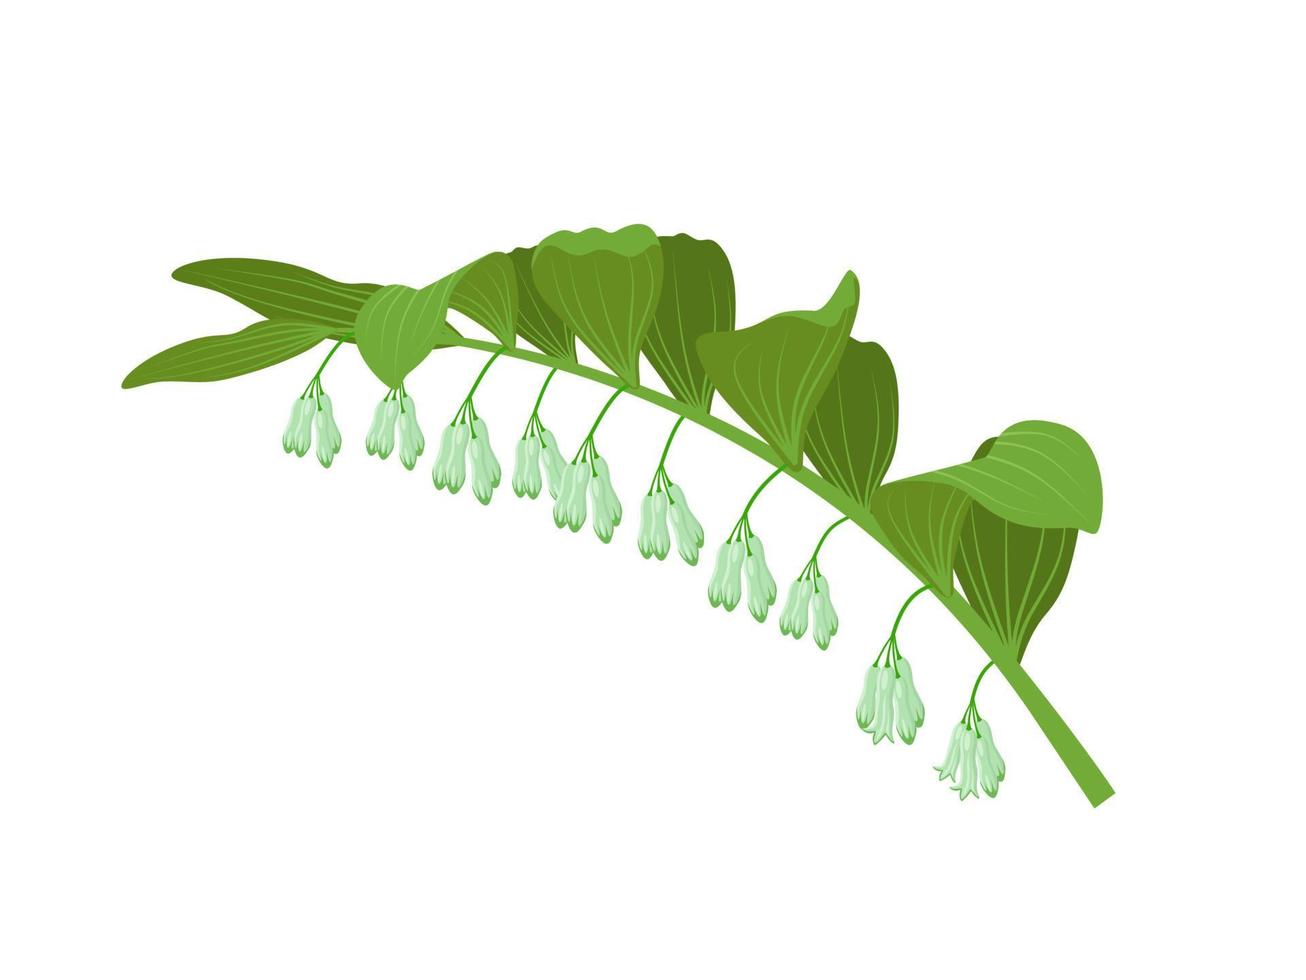 illustrazione vettoriale, pianta del sigillo di Salomone, nome scientifico polygonatum odoratum, isolato su sfondo bianco. vettore